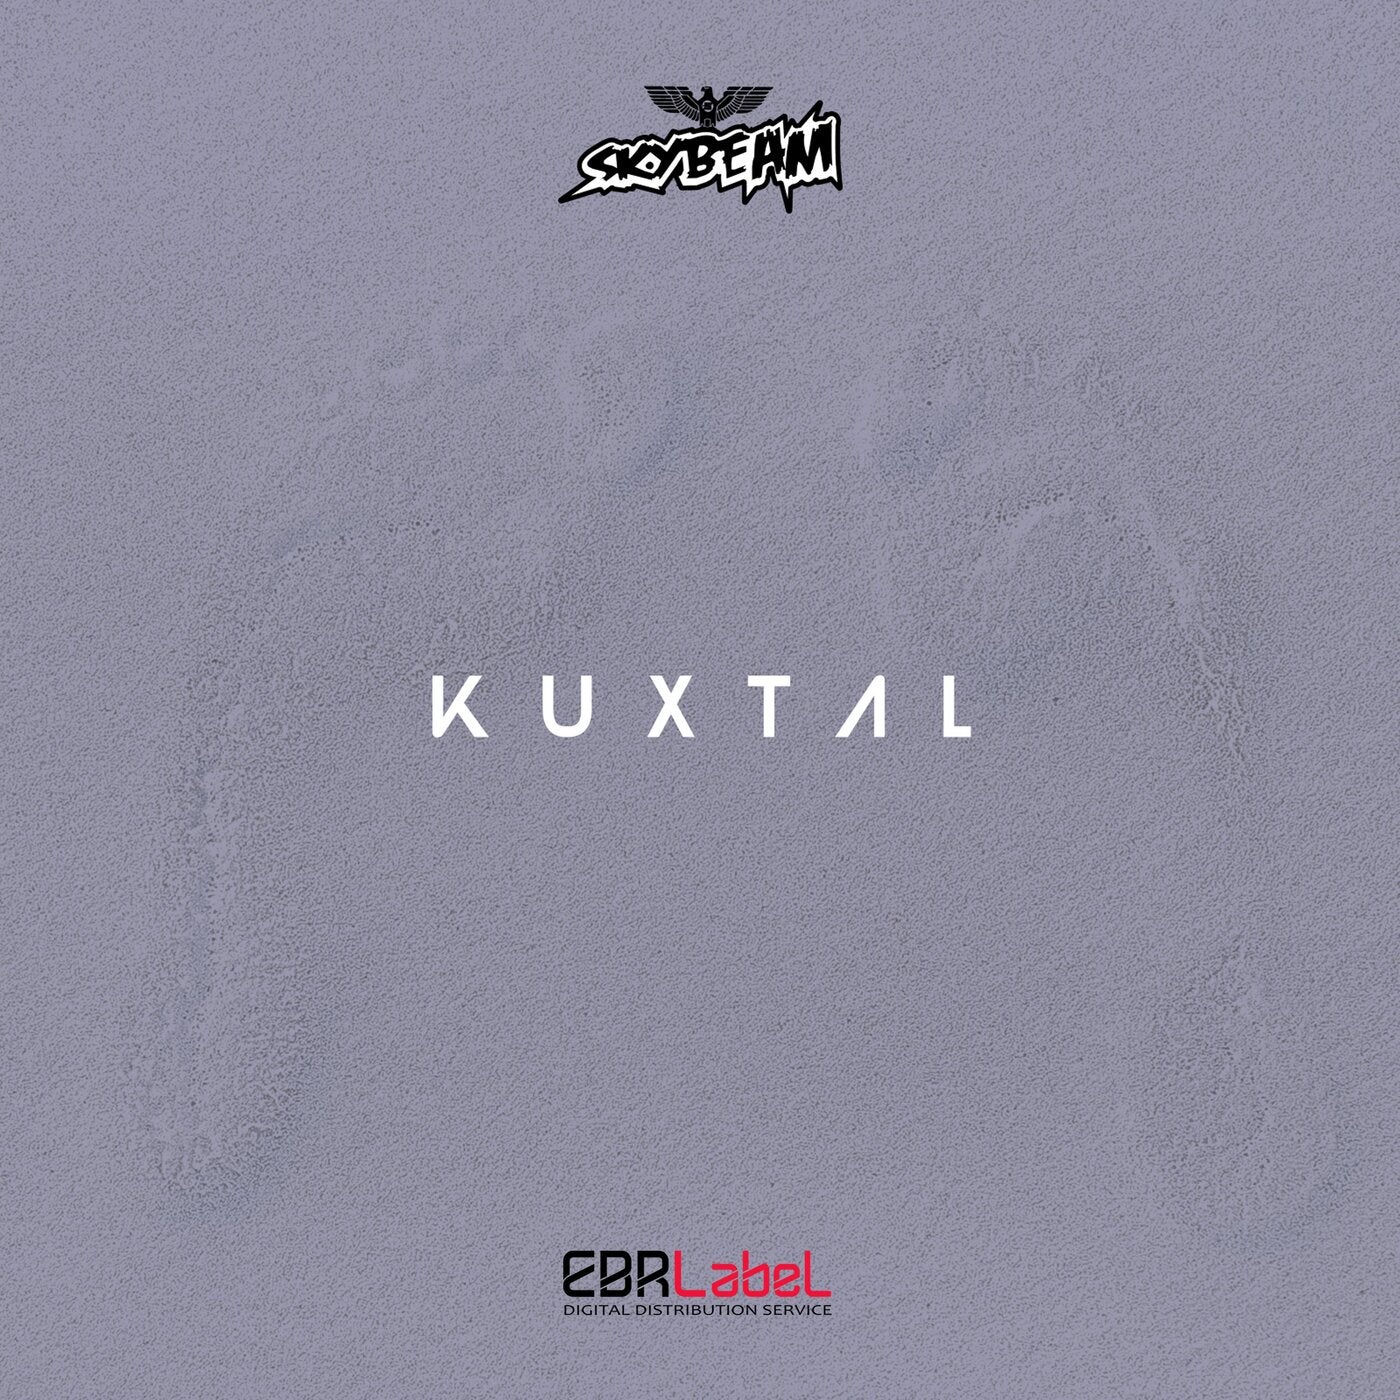 Kuxtal